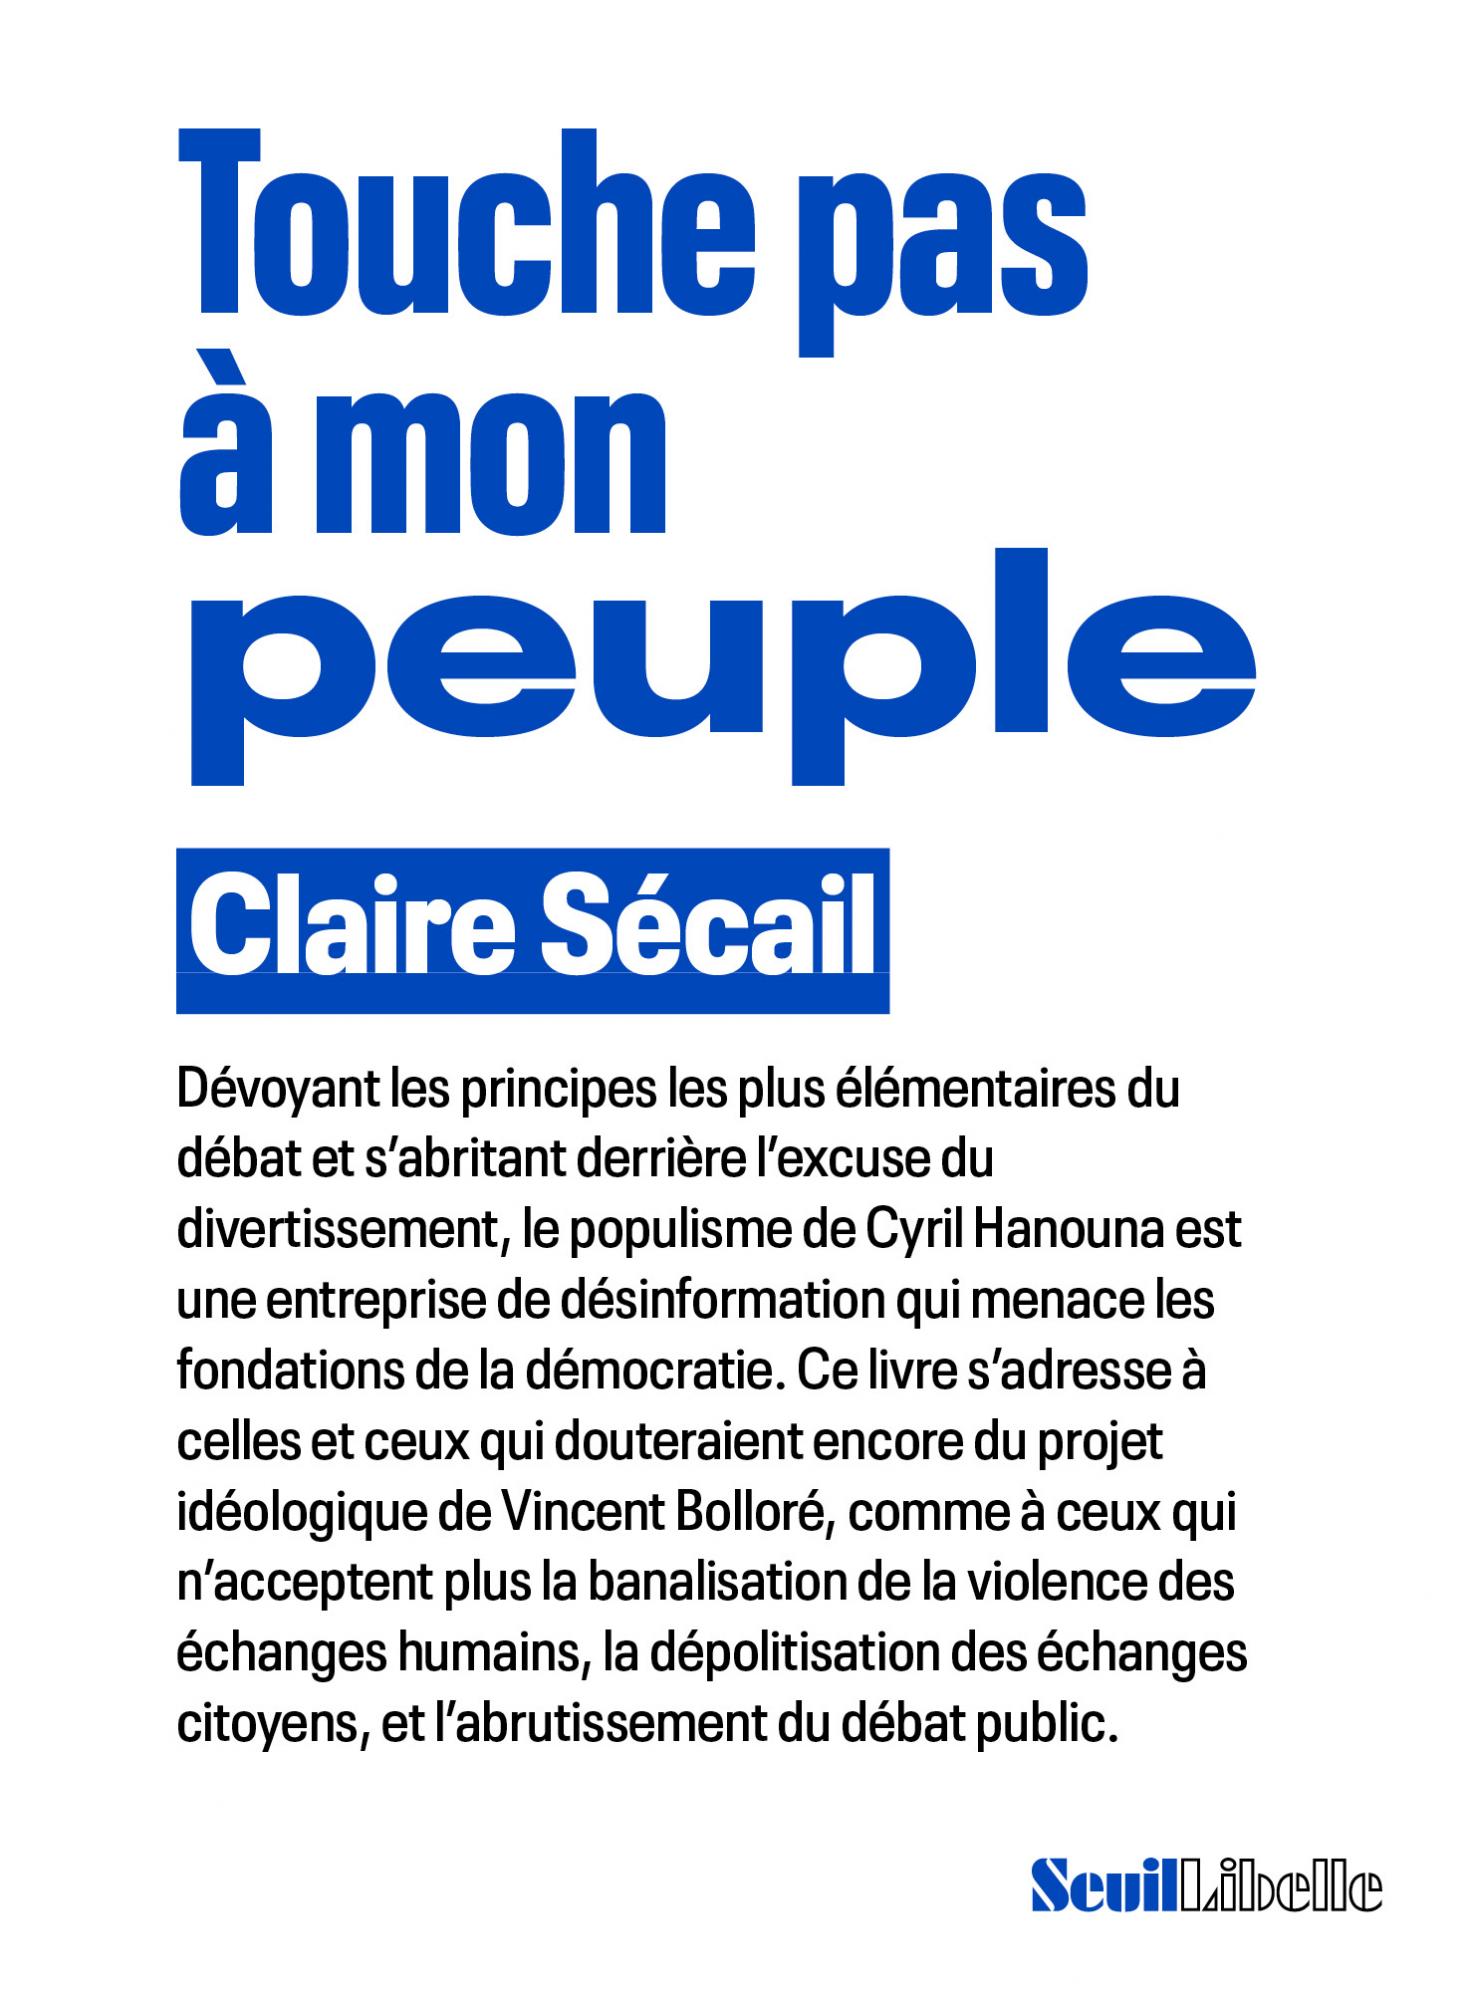 Claire Sécail: Touche pas à mon peuple (Français language, Seuil)